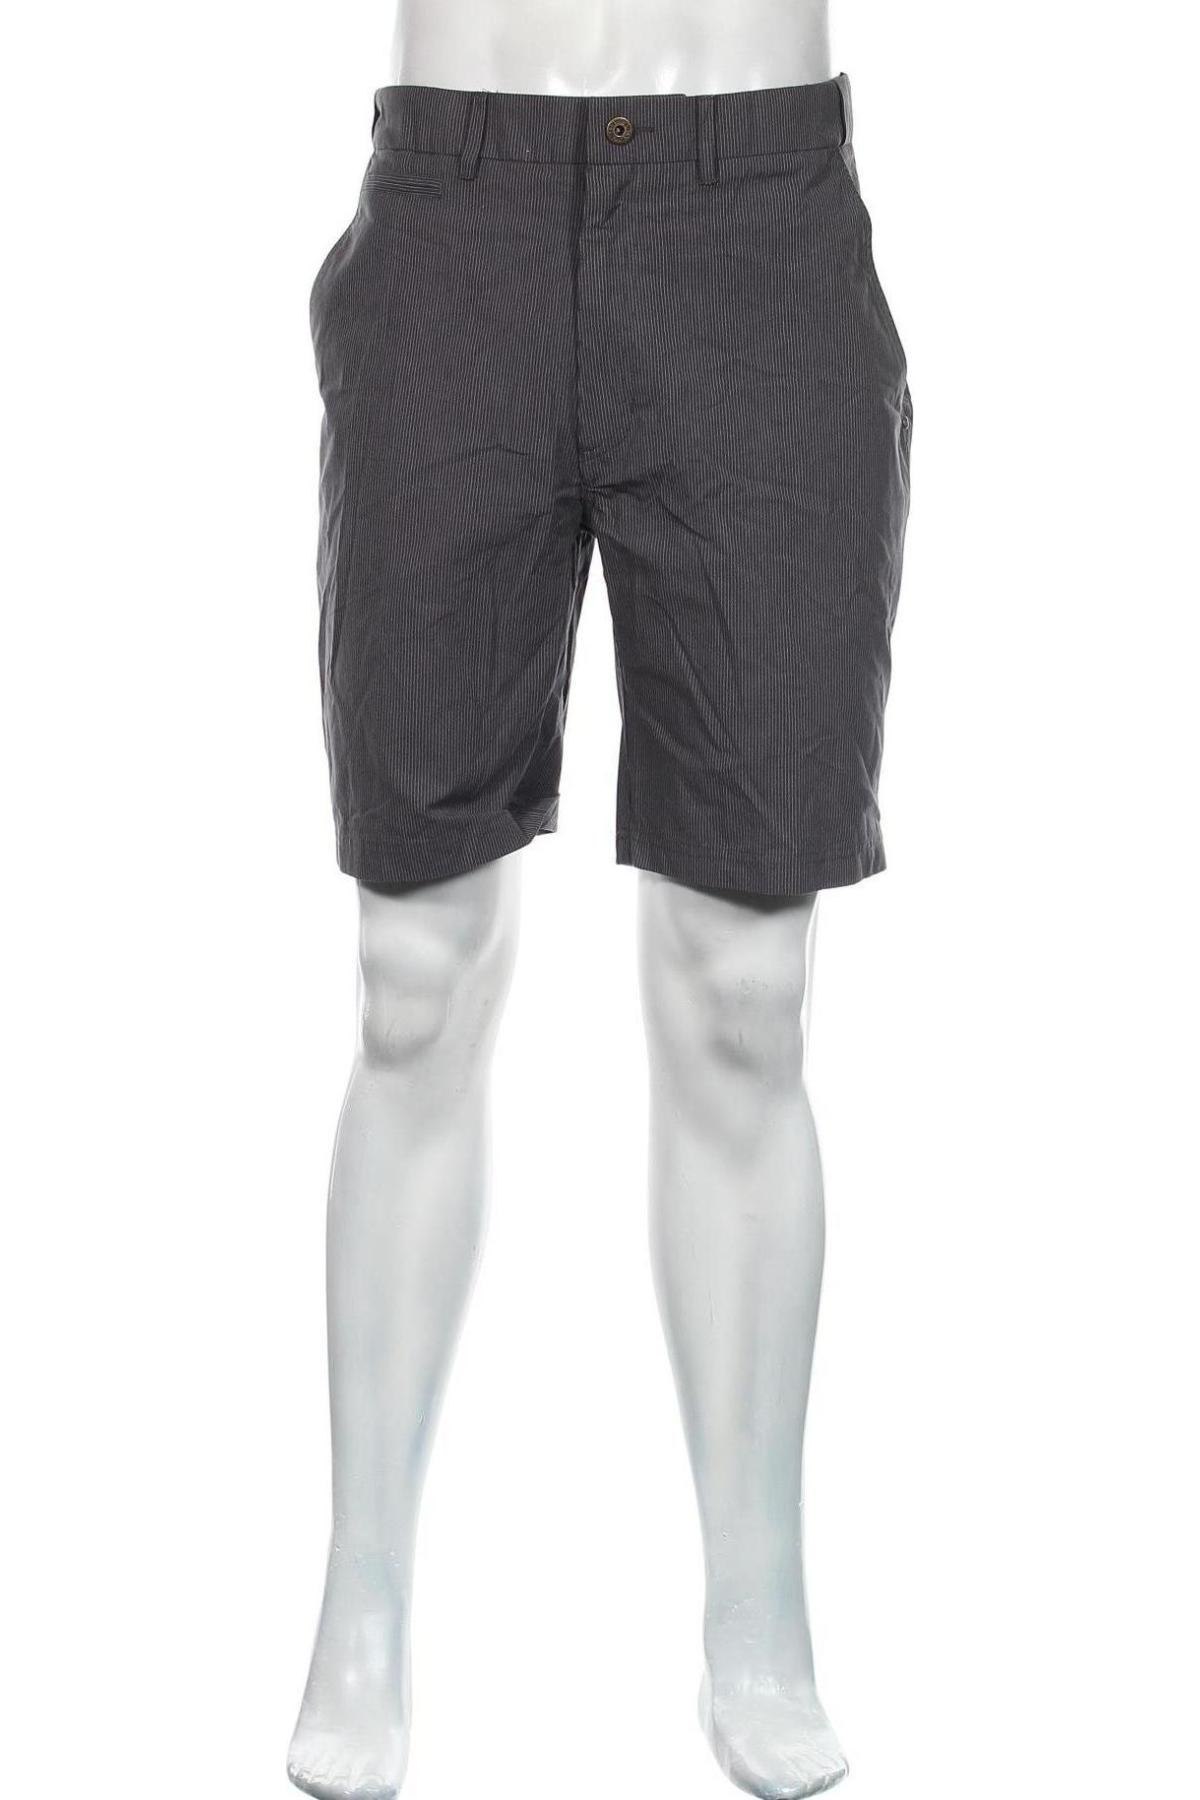 Herren Shorts Trespass, Größe L, Farbe Grau, Baumwolle, Preis 28,04 €